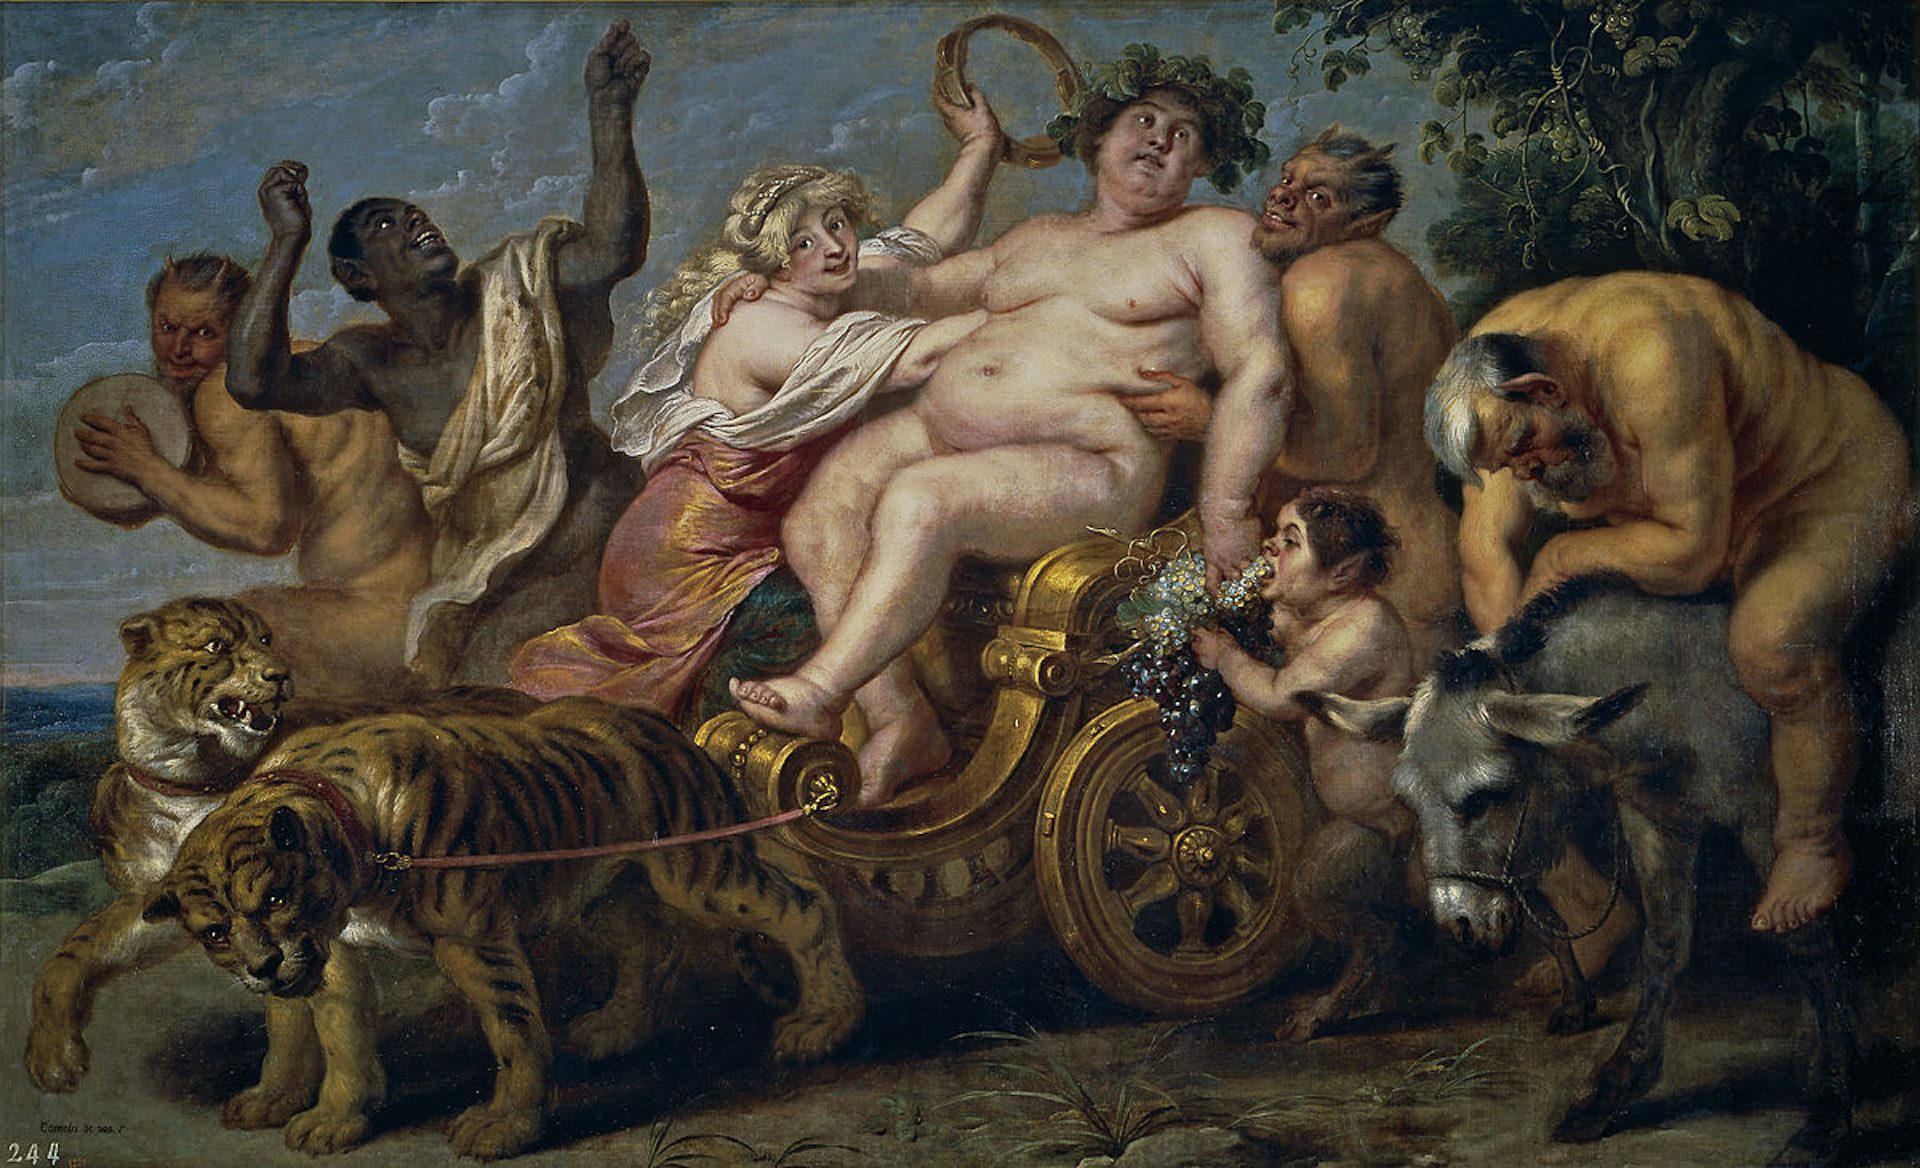 The Triumph of Bacchus by Cornelis de Vos (seventeenth century).